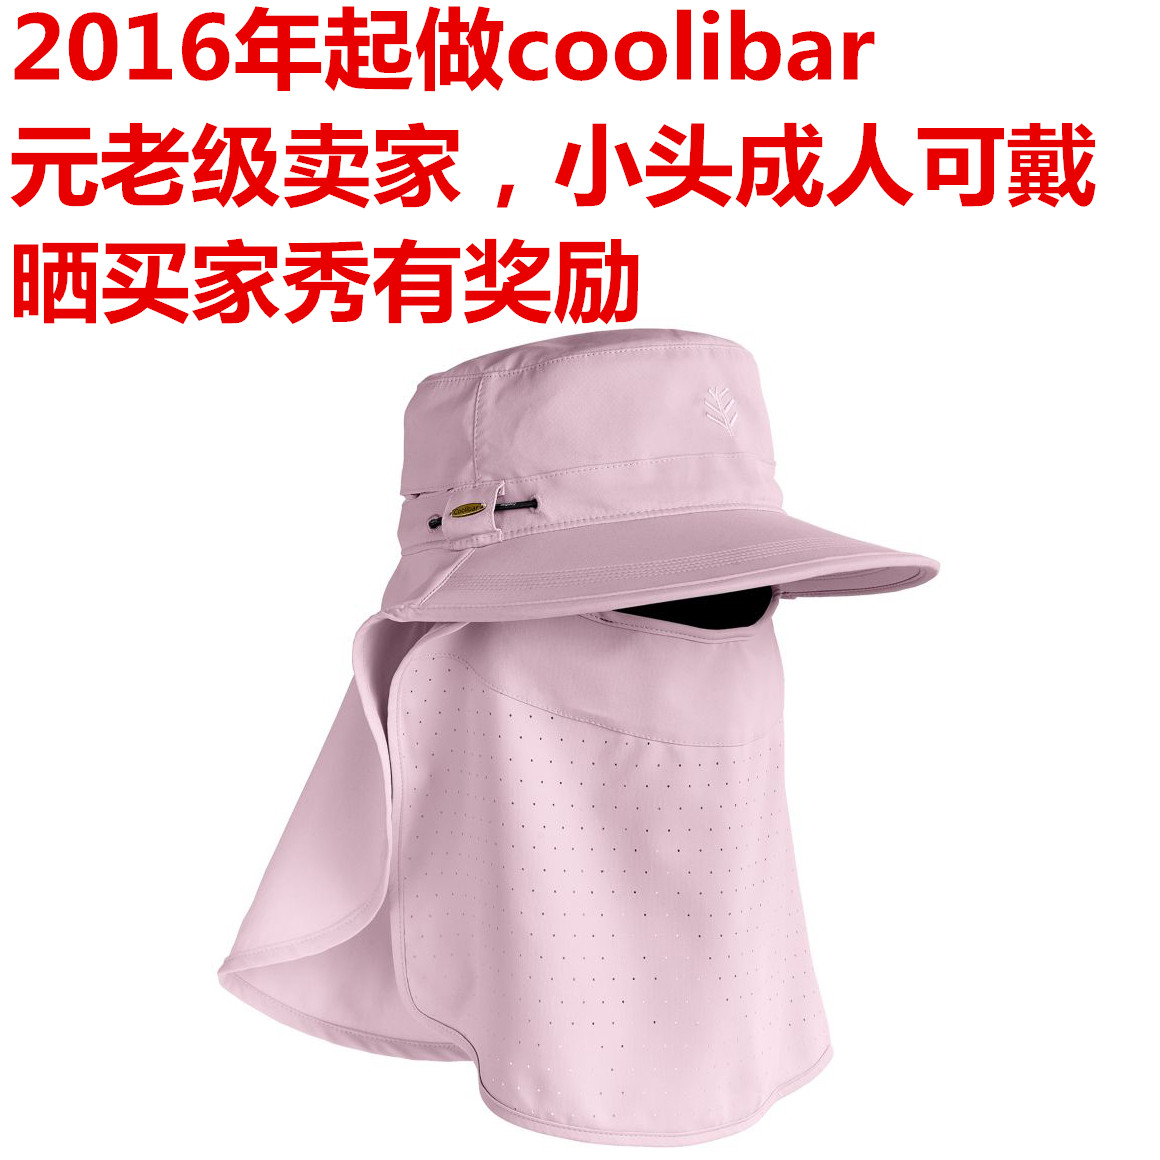 美国海淘Coolibar儿童防紫外线帽 防晒帽 面罩可拆 UPF50+ 10122